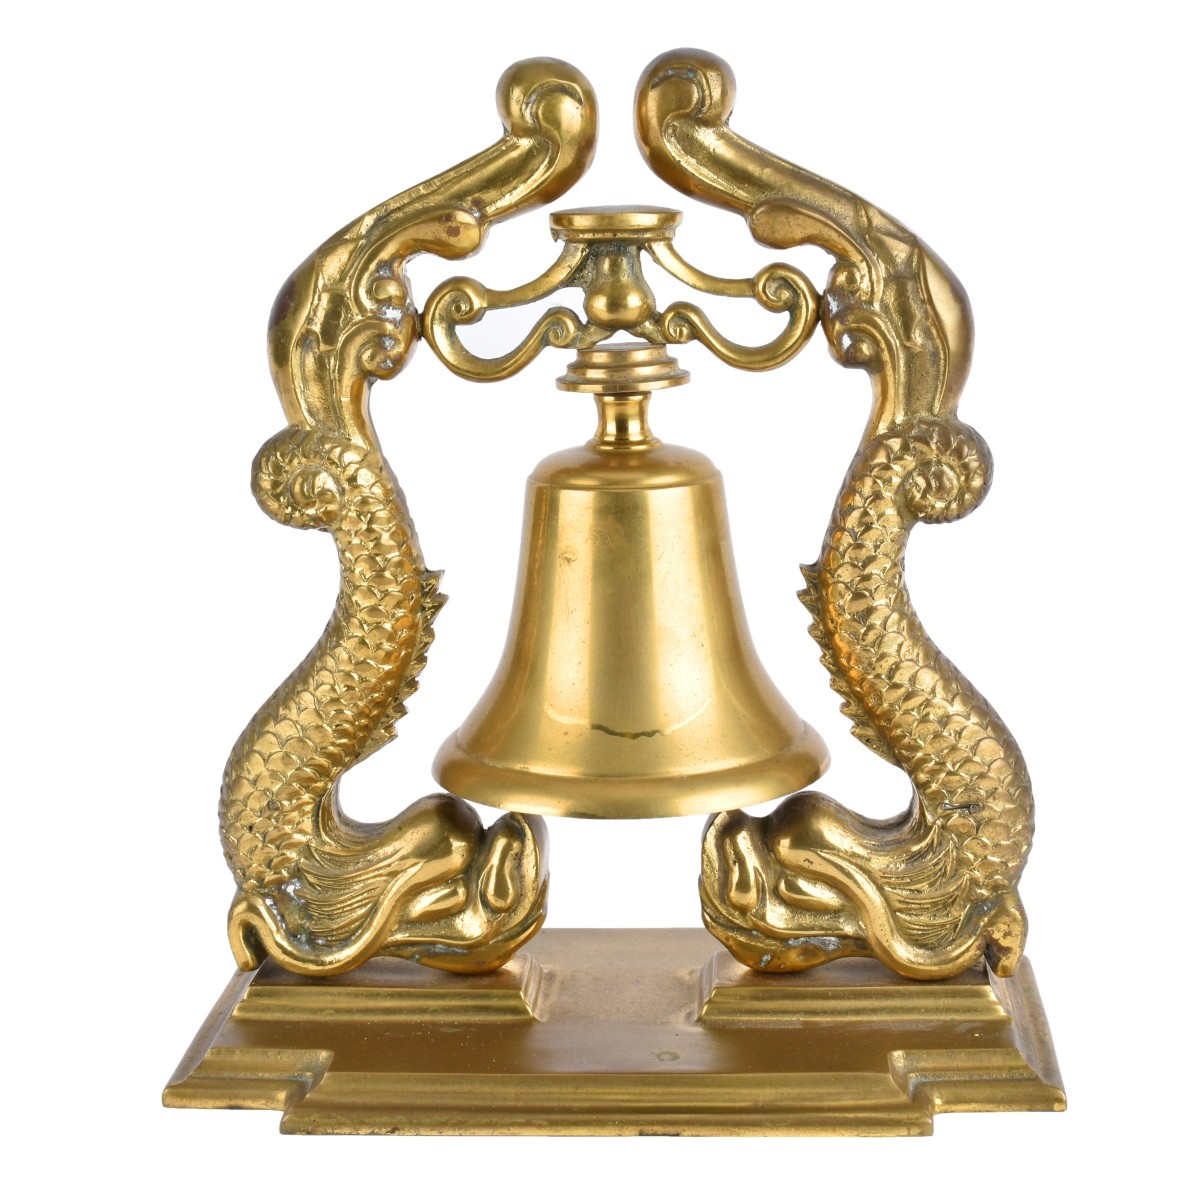 Antique Brass Bell